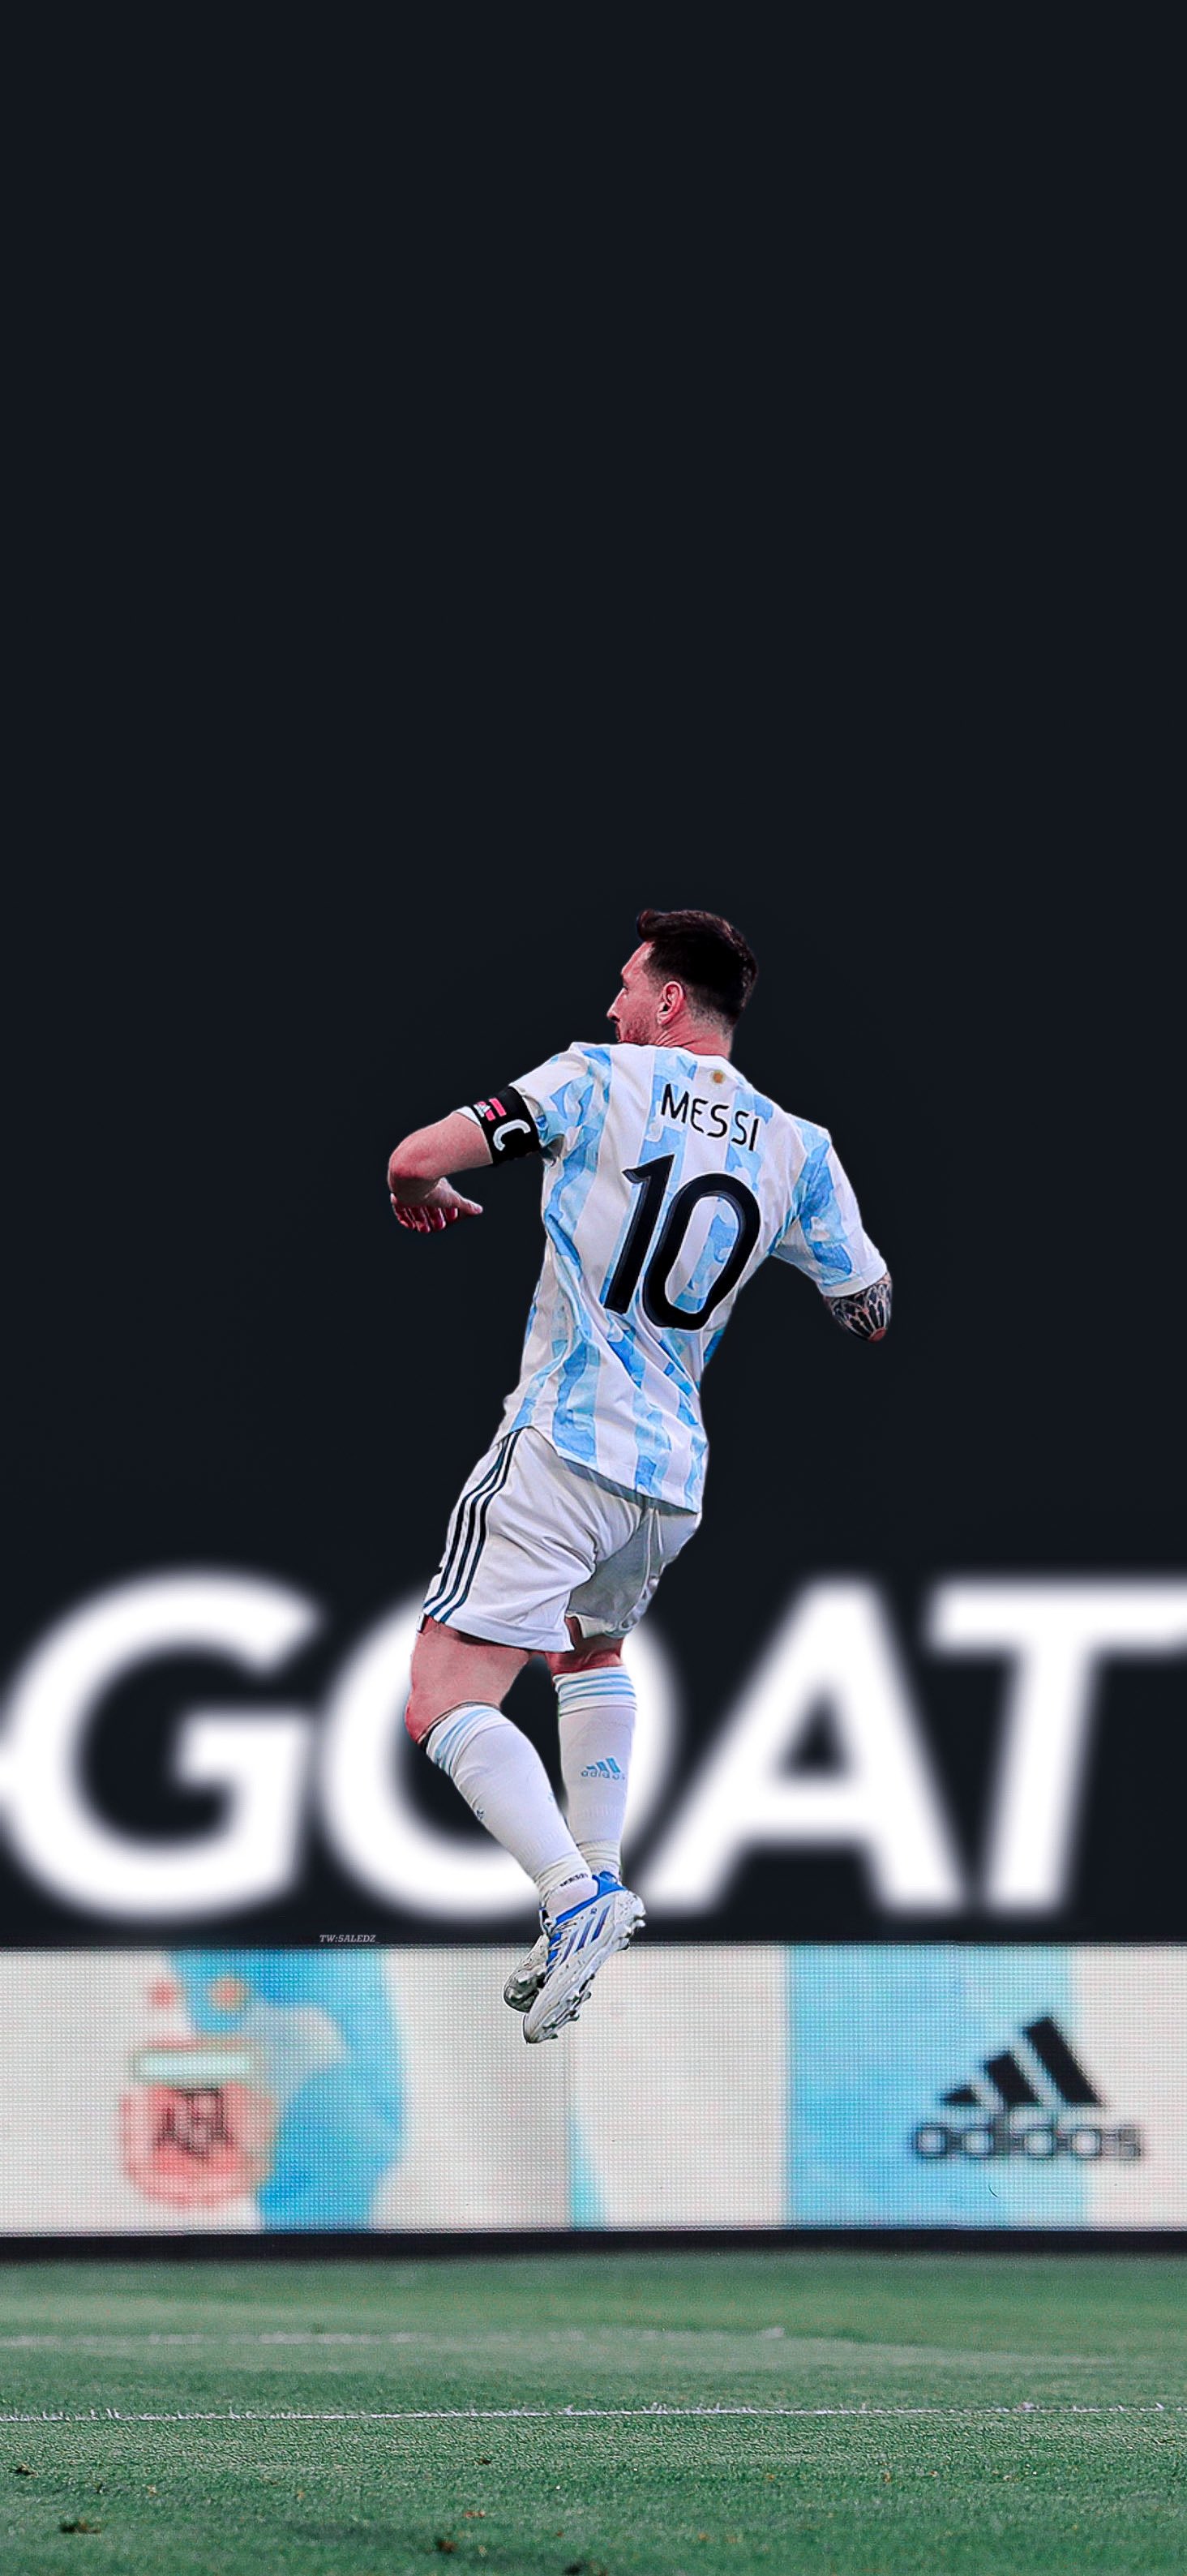 Đội tuyển Argentina không thể thiếu sự xuất sắc của Messi - một người anh hùng trong lòng hàng triệu fan hâm mộ bóng đá trên toàn thế giới. Khám phá Messi Argentina qua các bức ảnh đậm nét truyền thống và tinh thần đấu tranh, để thấy rõ điểm mạnh của đội tuyển và sự chân thực của chân sút này trong mỗi trận đấu.